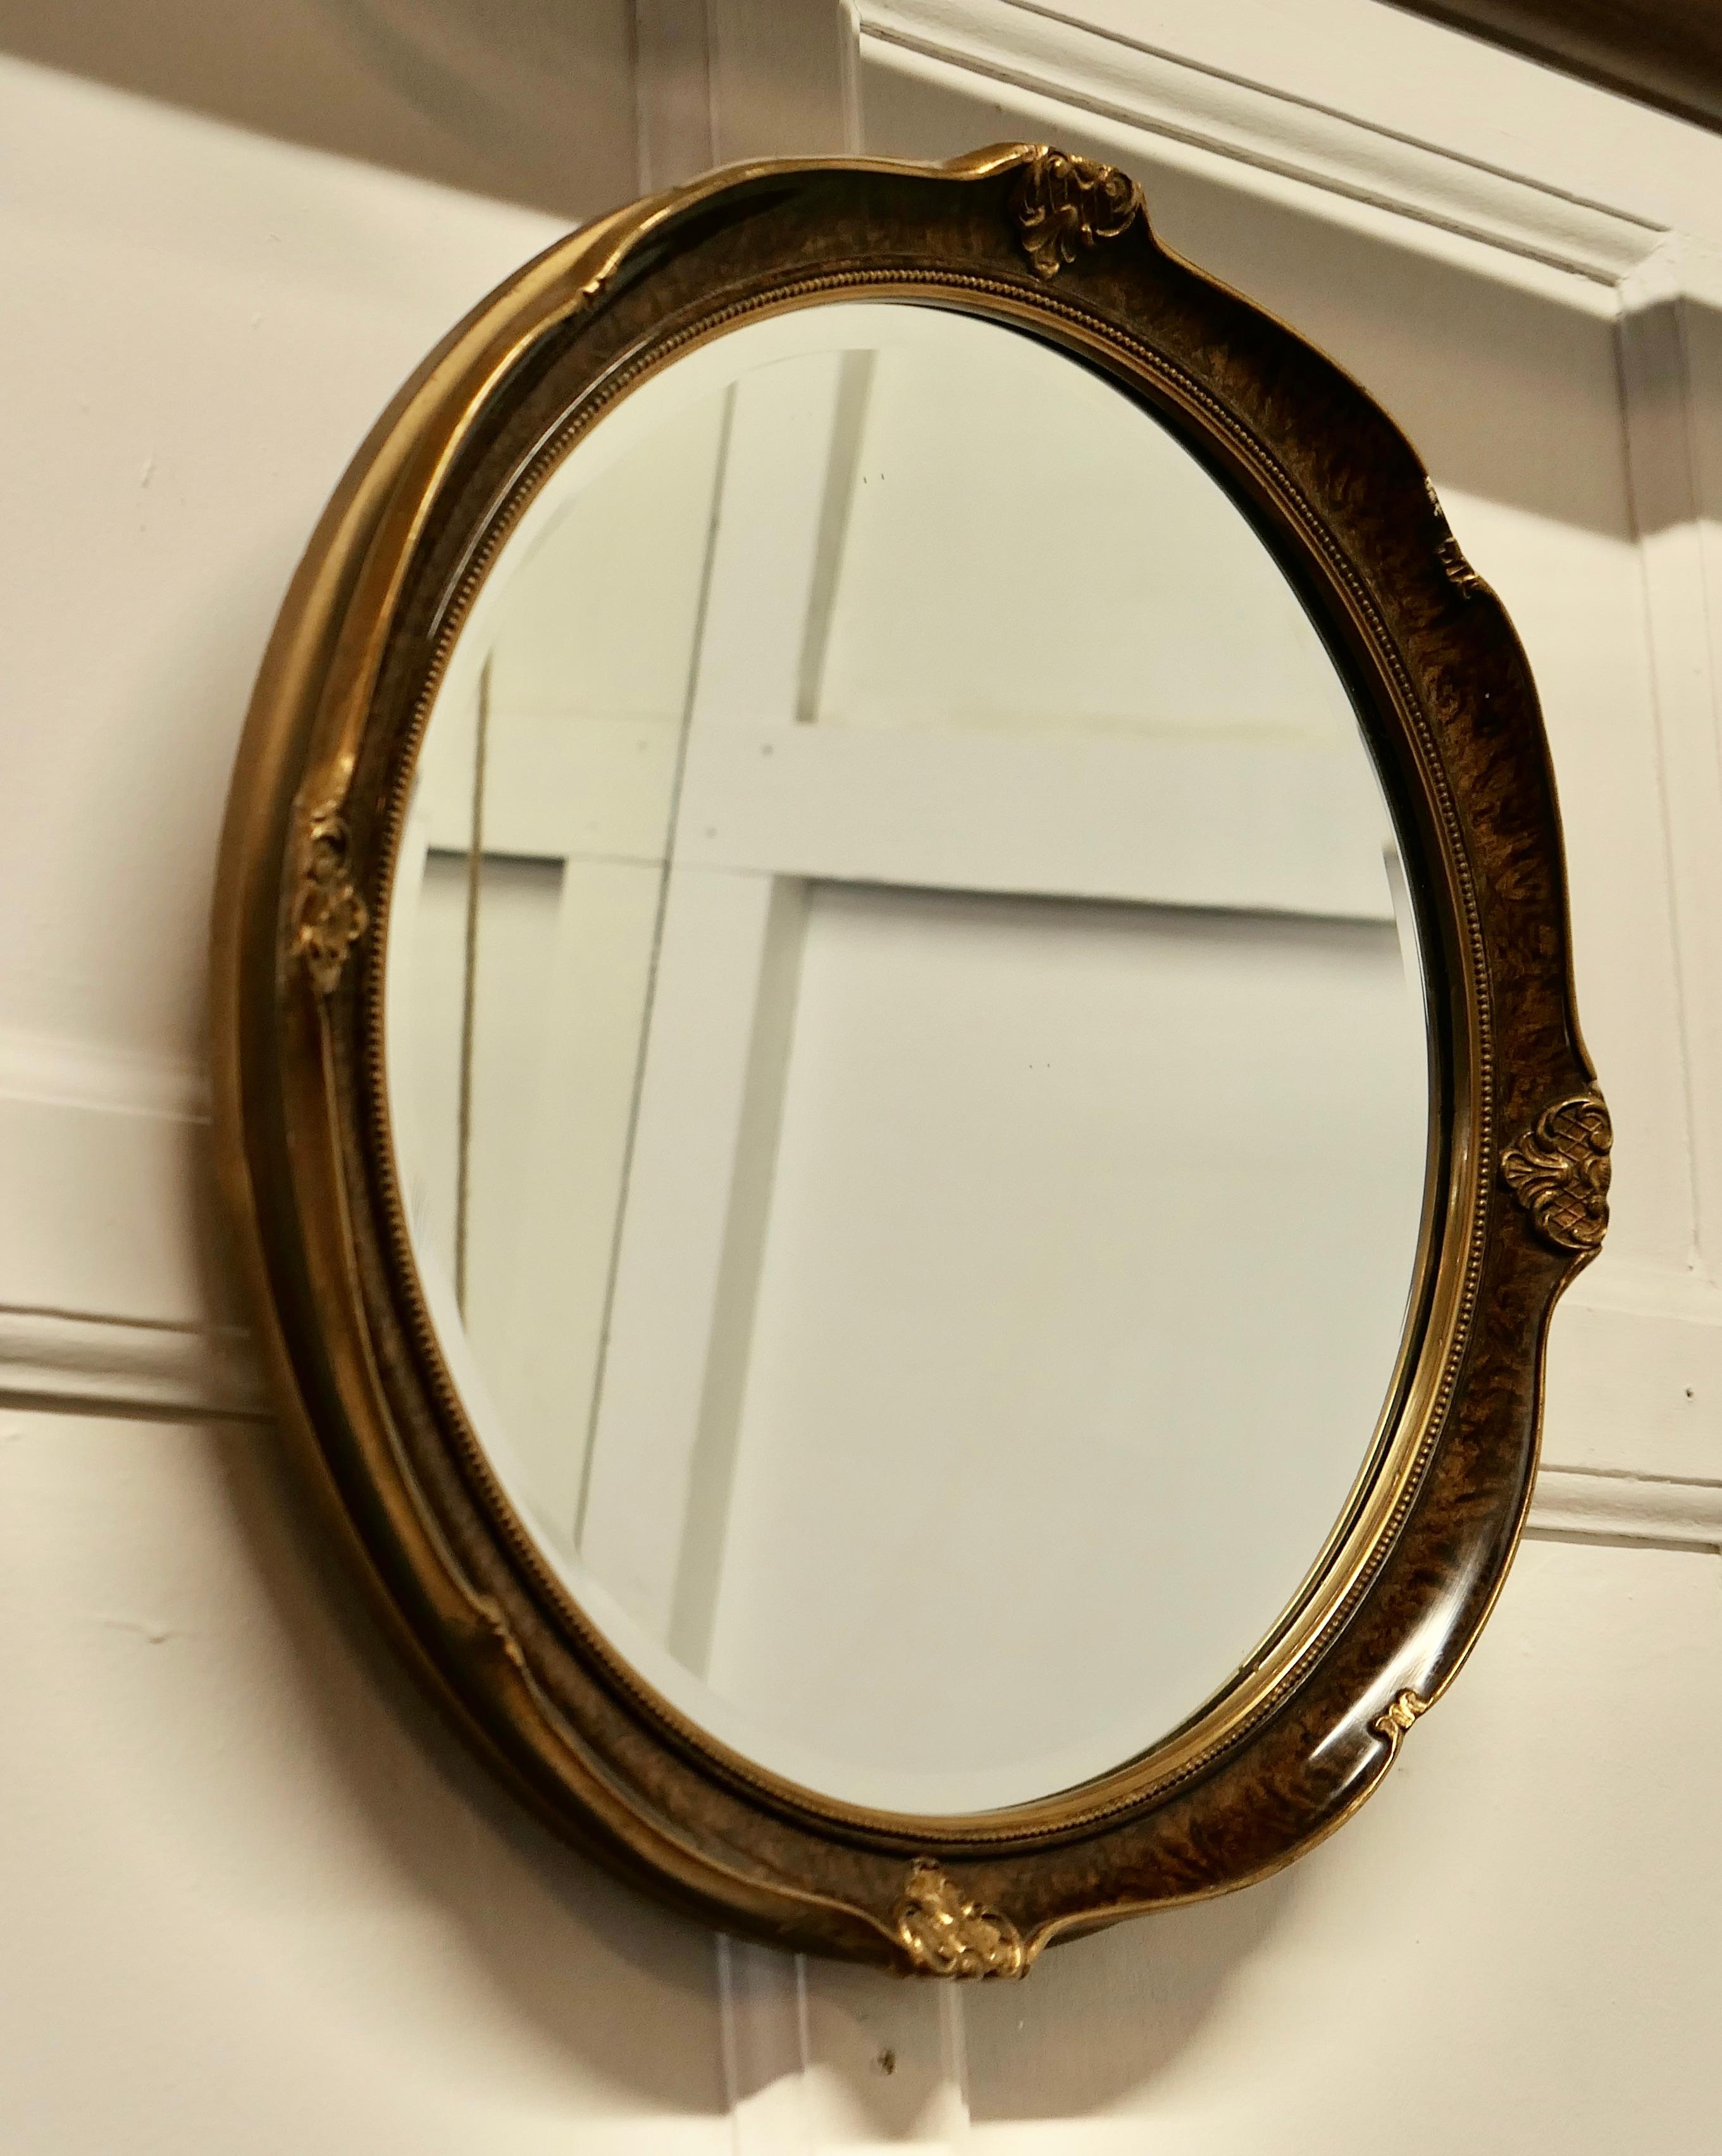 Miroir ovale finition Scumble

Ce miroir a un cadre rond moulé de 2